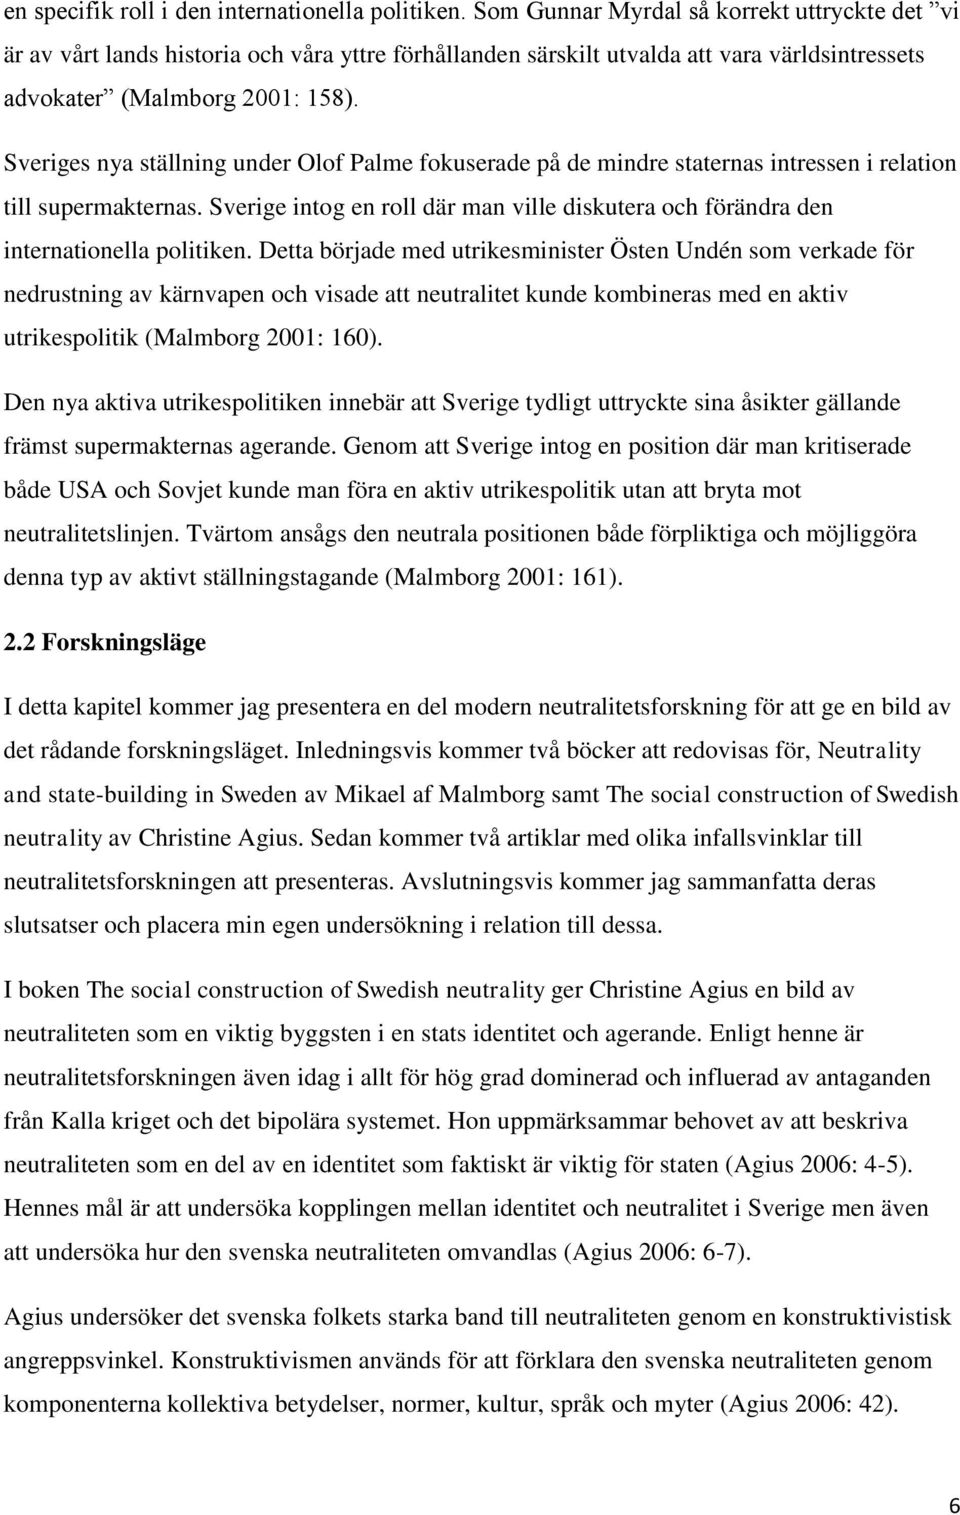 Sveriges nya ställning under Olof Palme fokuserade på de mindre staternas intressen i relation till supermakternas.